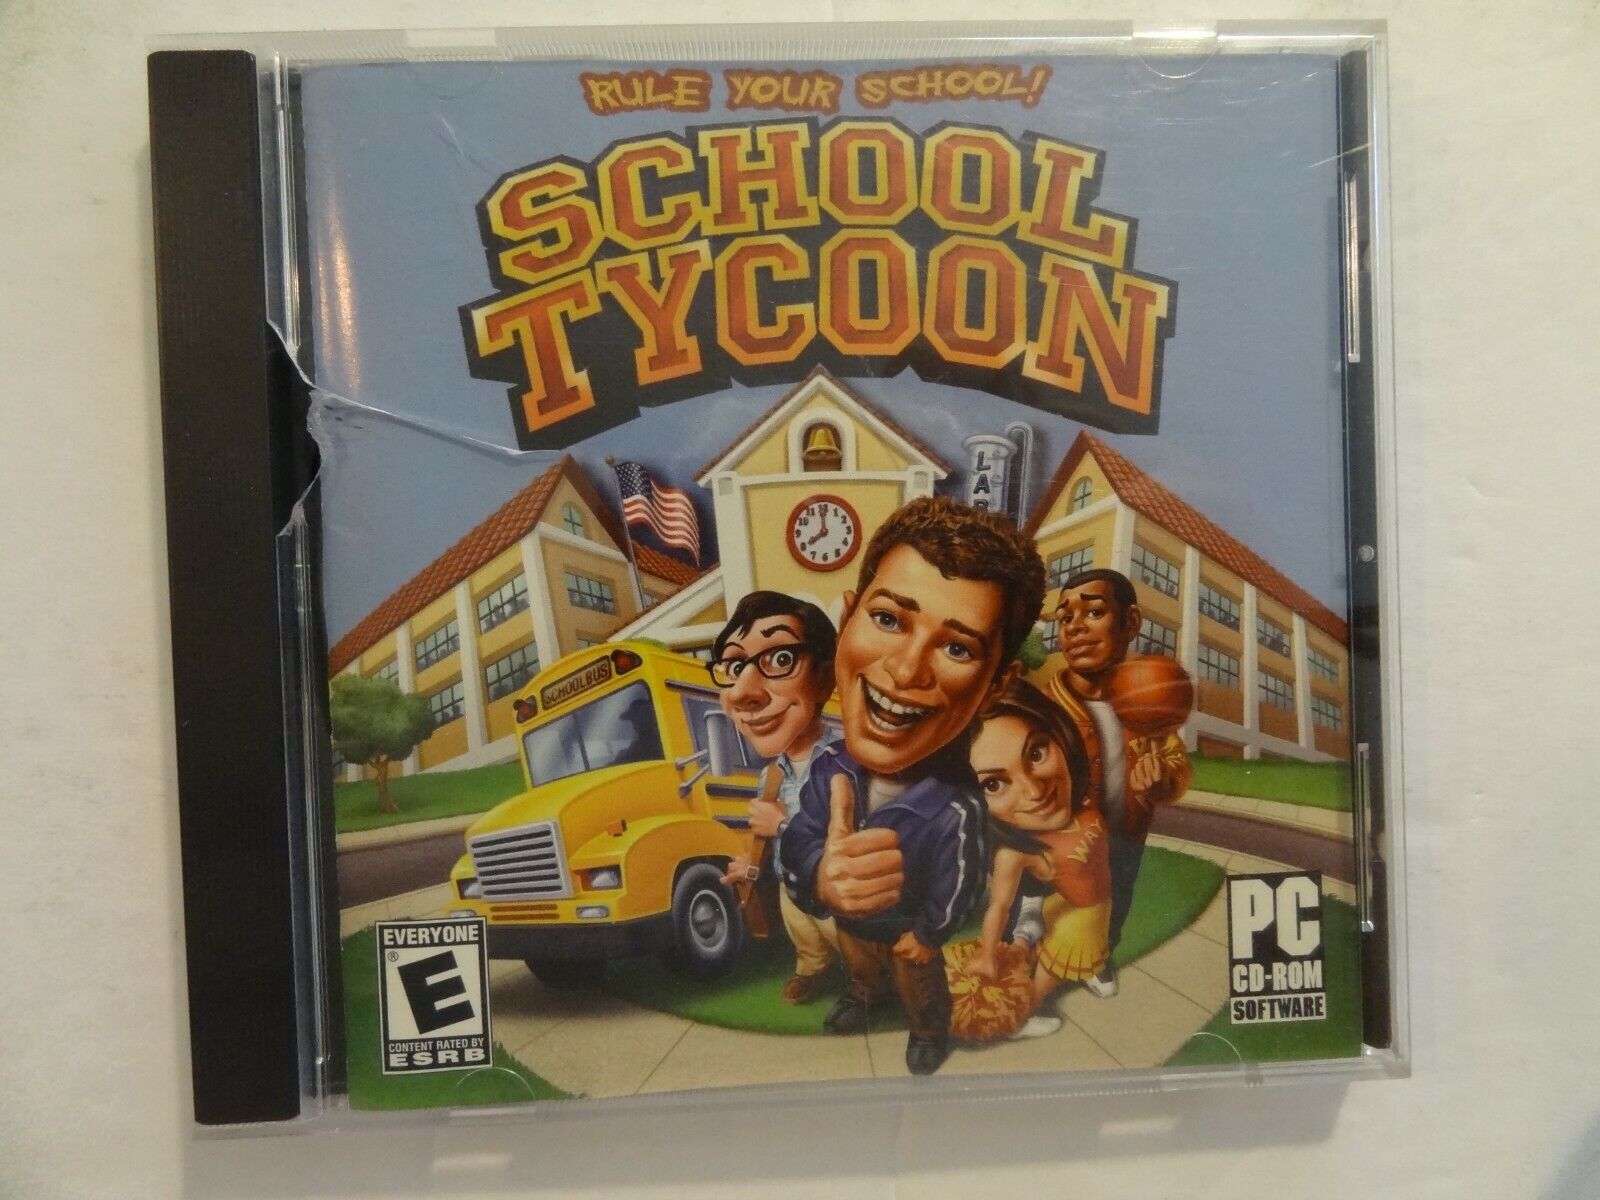 SCHOOL TYCOON - Rule Your School - PC CD-ROM (2003)